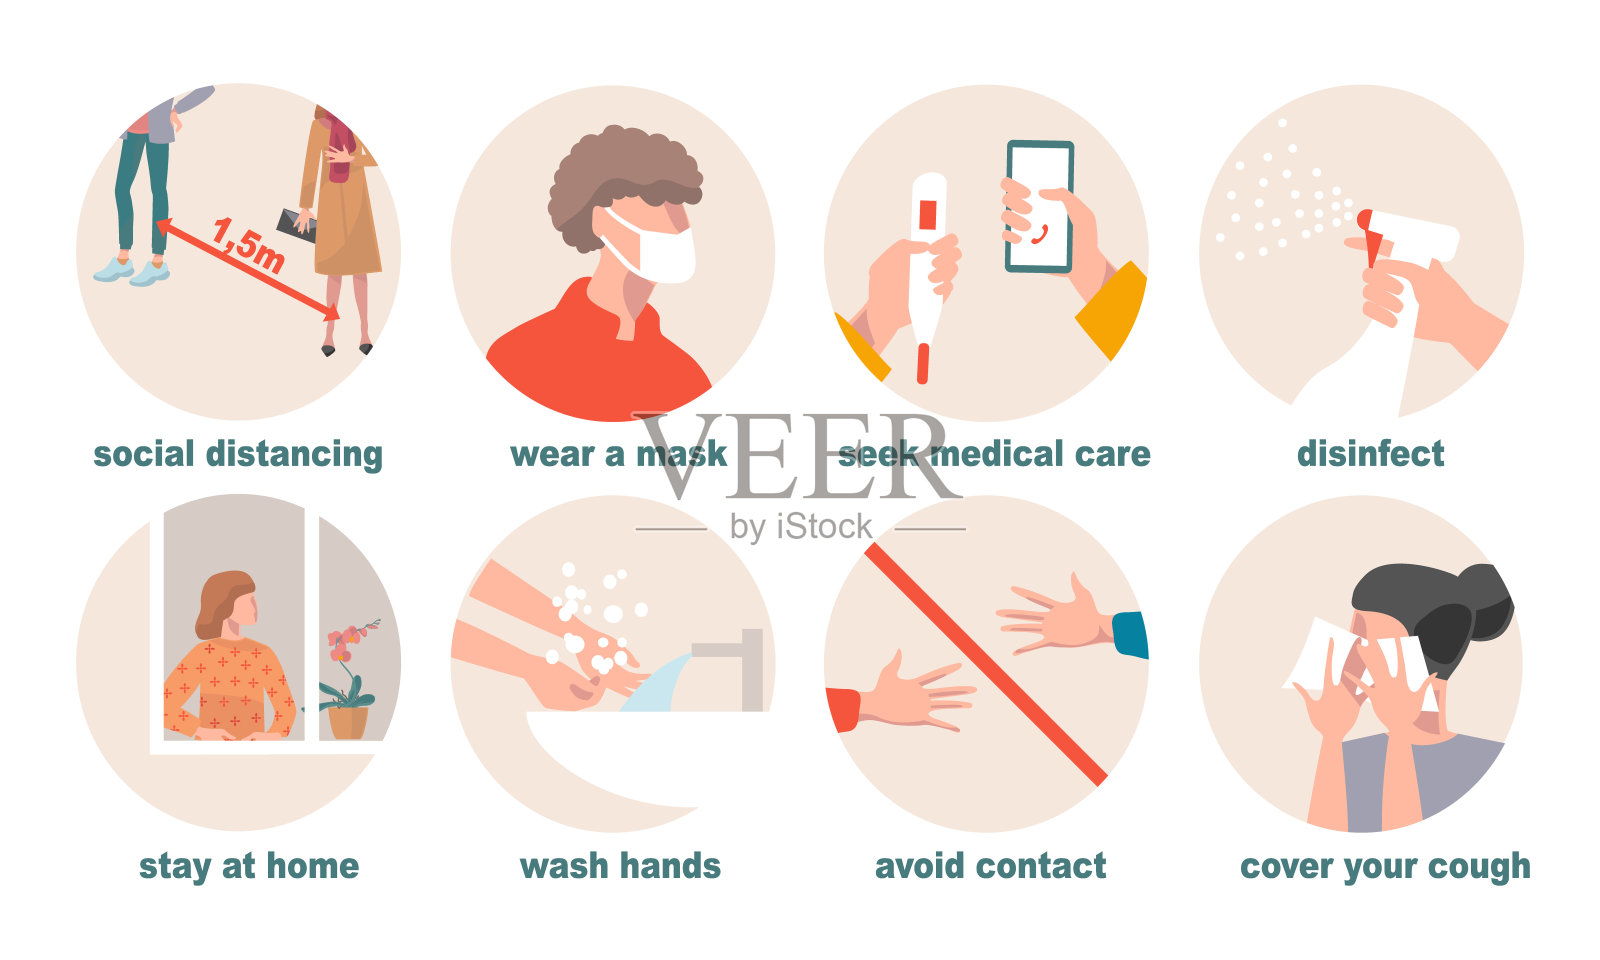 预防新冠肺炎的防护措施——洗手、待在家里、消毒、保持社交距离、戴口罩、使用咳嗽纸巾、避免接触、就医。新常态插画图片素材